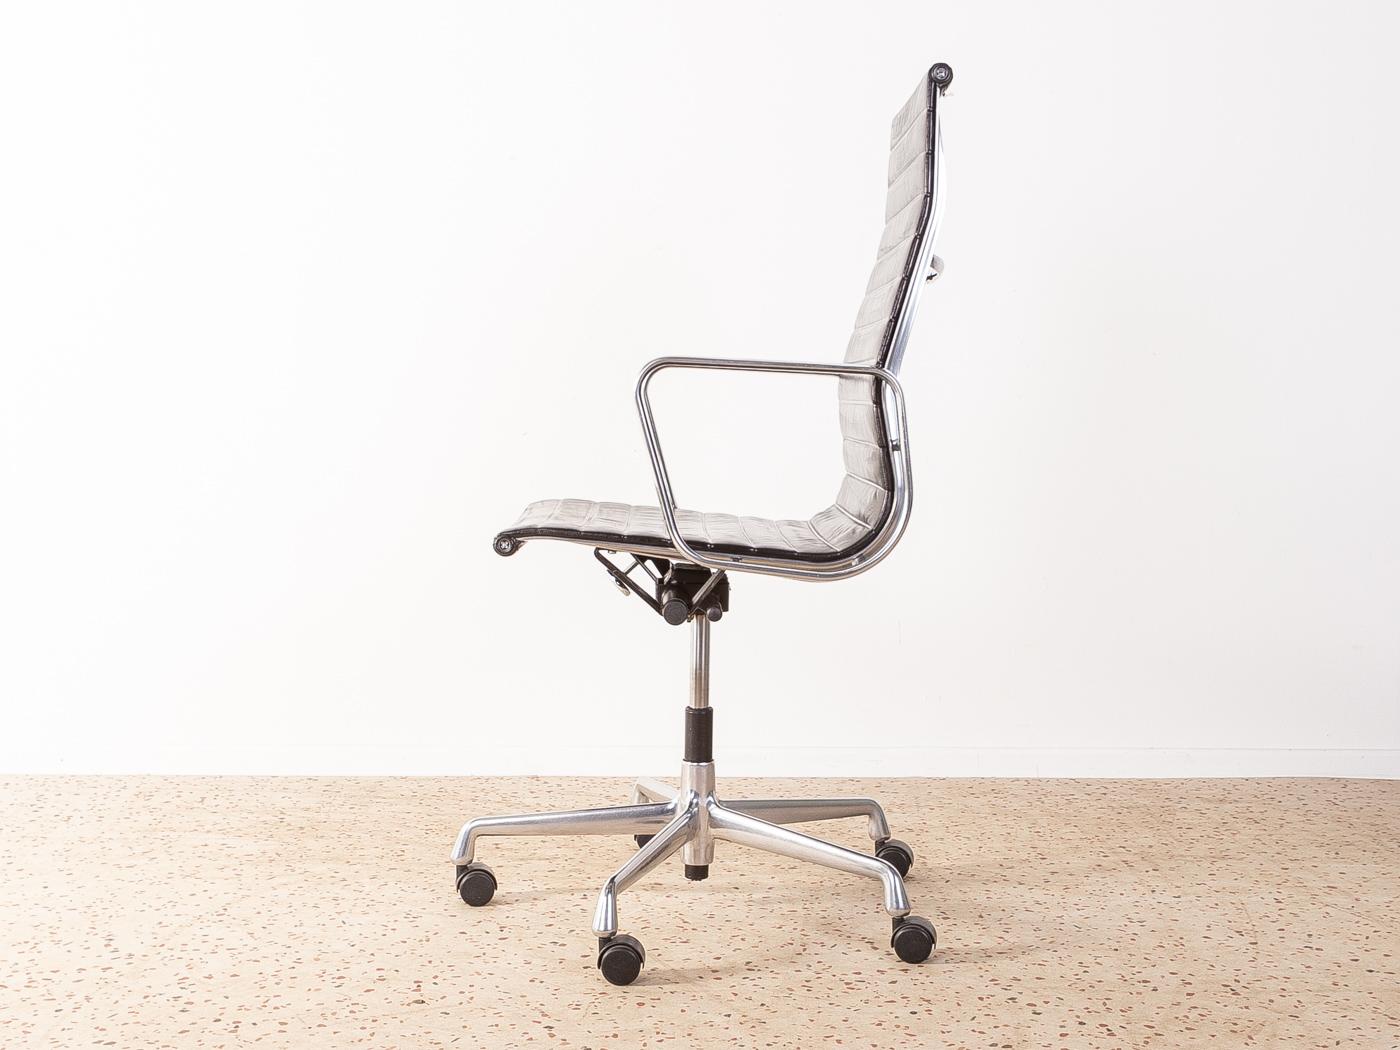 luminum Chair 119 von Charles und Ray Eames für Vitra mit originalem schwarzem Lederbezug. Die Seitenprofile, Armlehnen und Clamps sind aus poliertem Aluminiumdruckguss gefertigt und verchromt. Das Untergestell ist ein 5-Stern-Untergestell mit